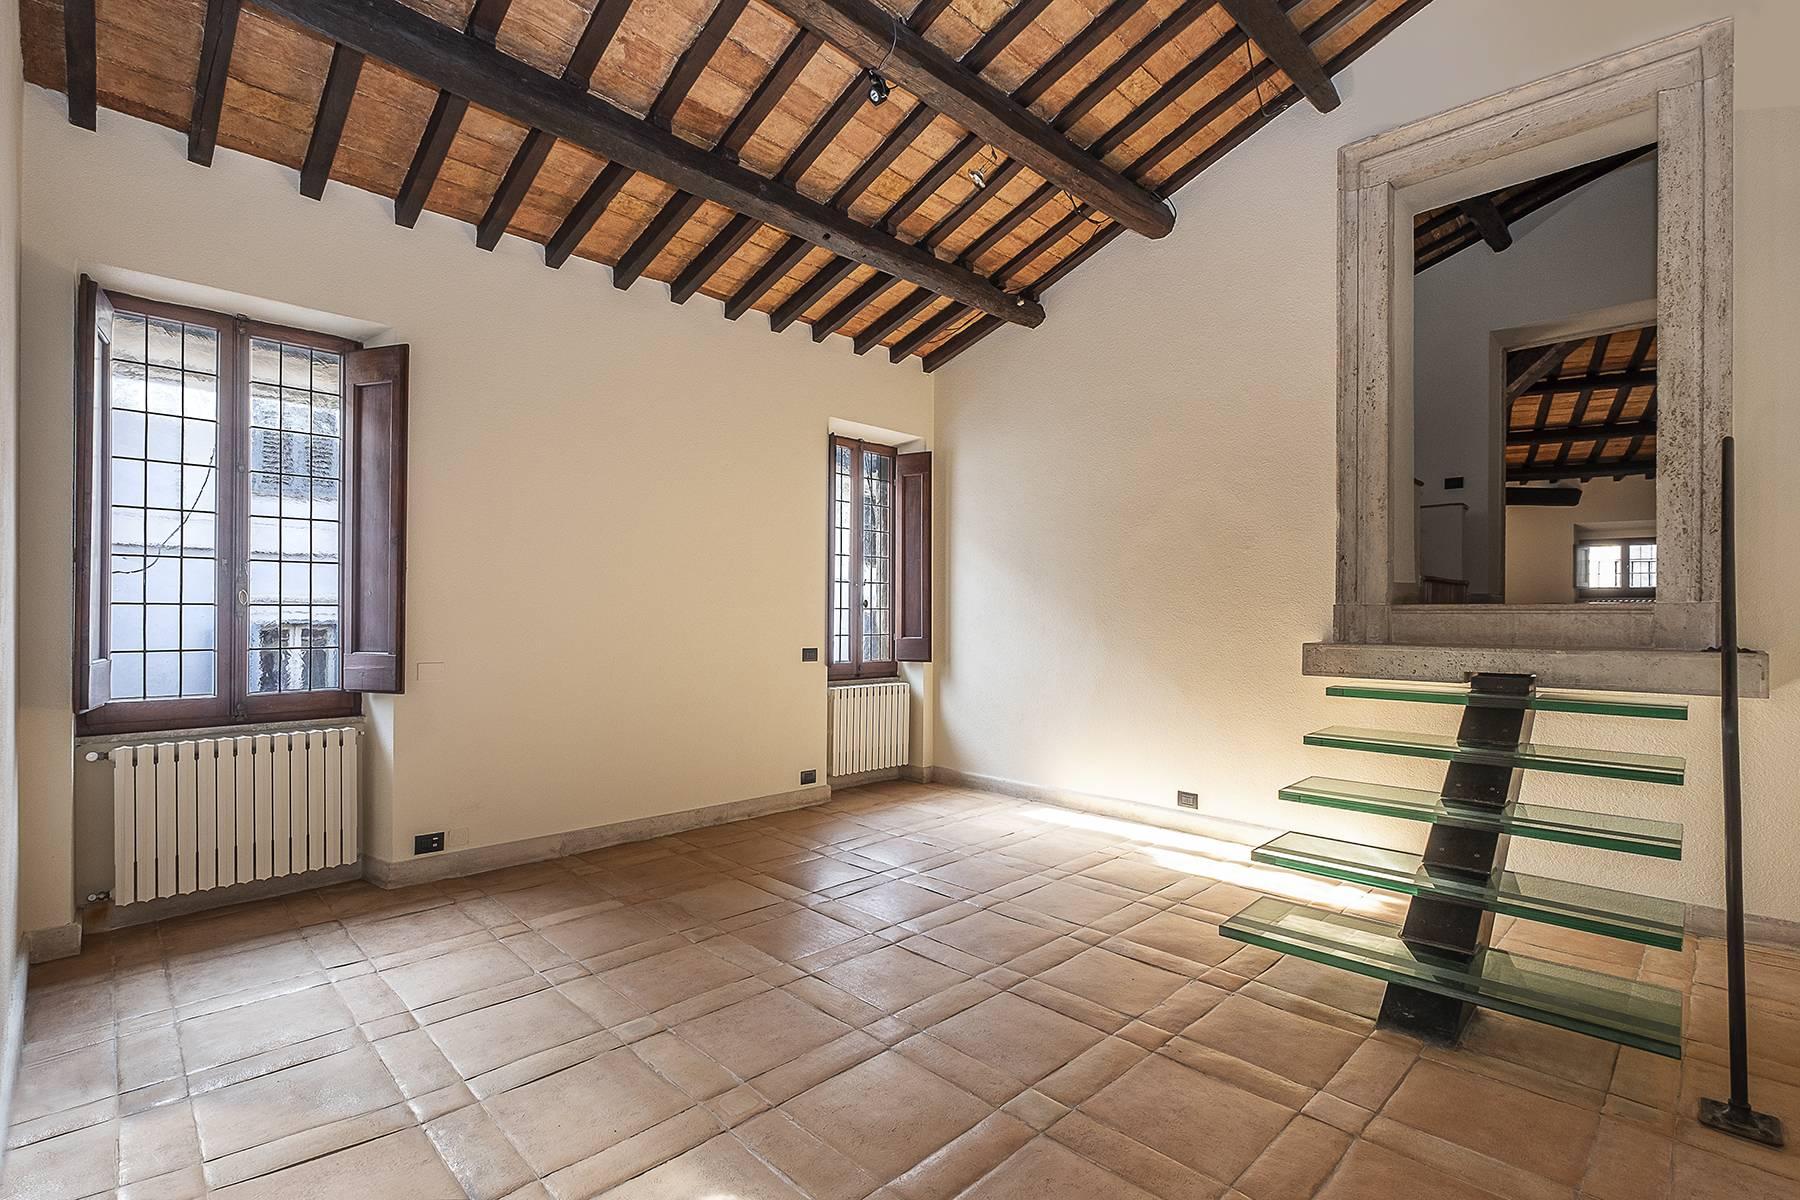 Esclusivo appartamento in centro storico con vista sui tetti di Roma - 6